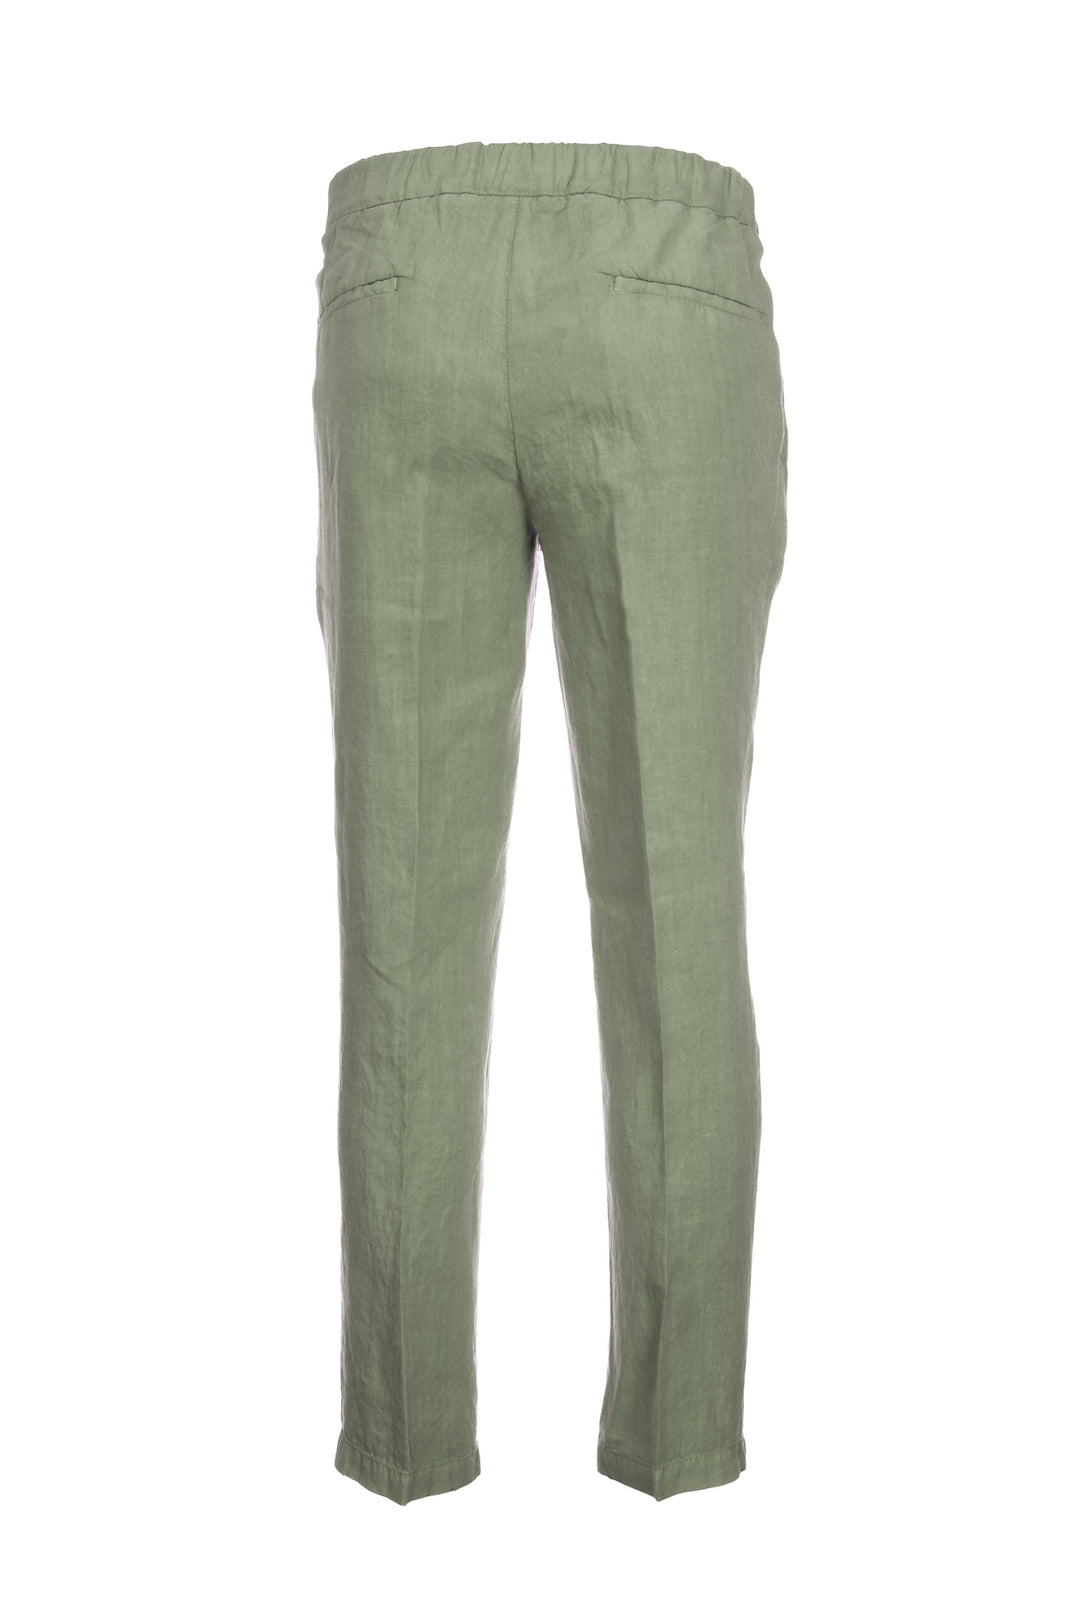 DEVORE Pantalone leggero verde militare in lino con una pence - Mancinelli 1954